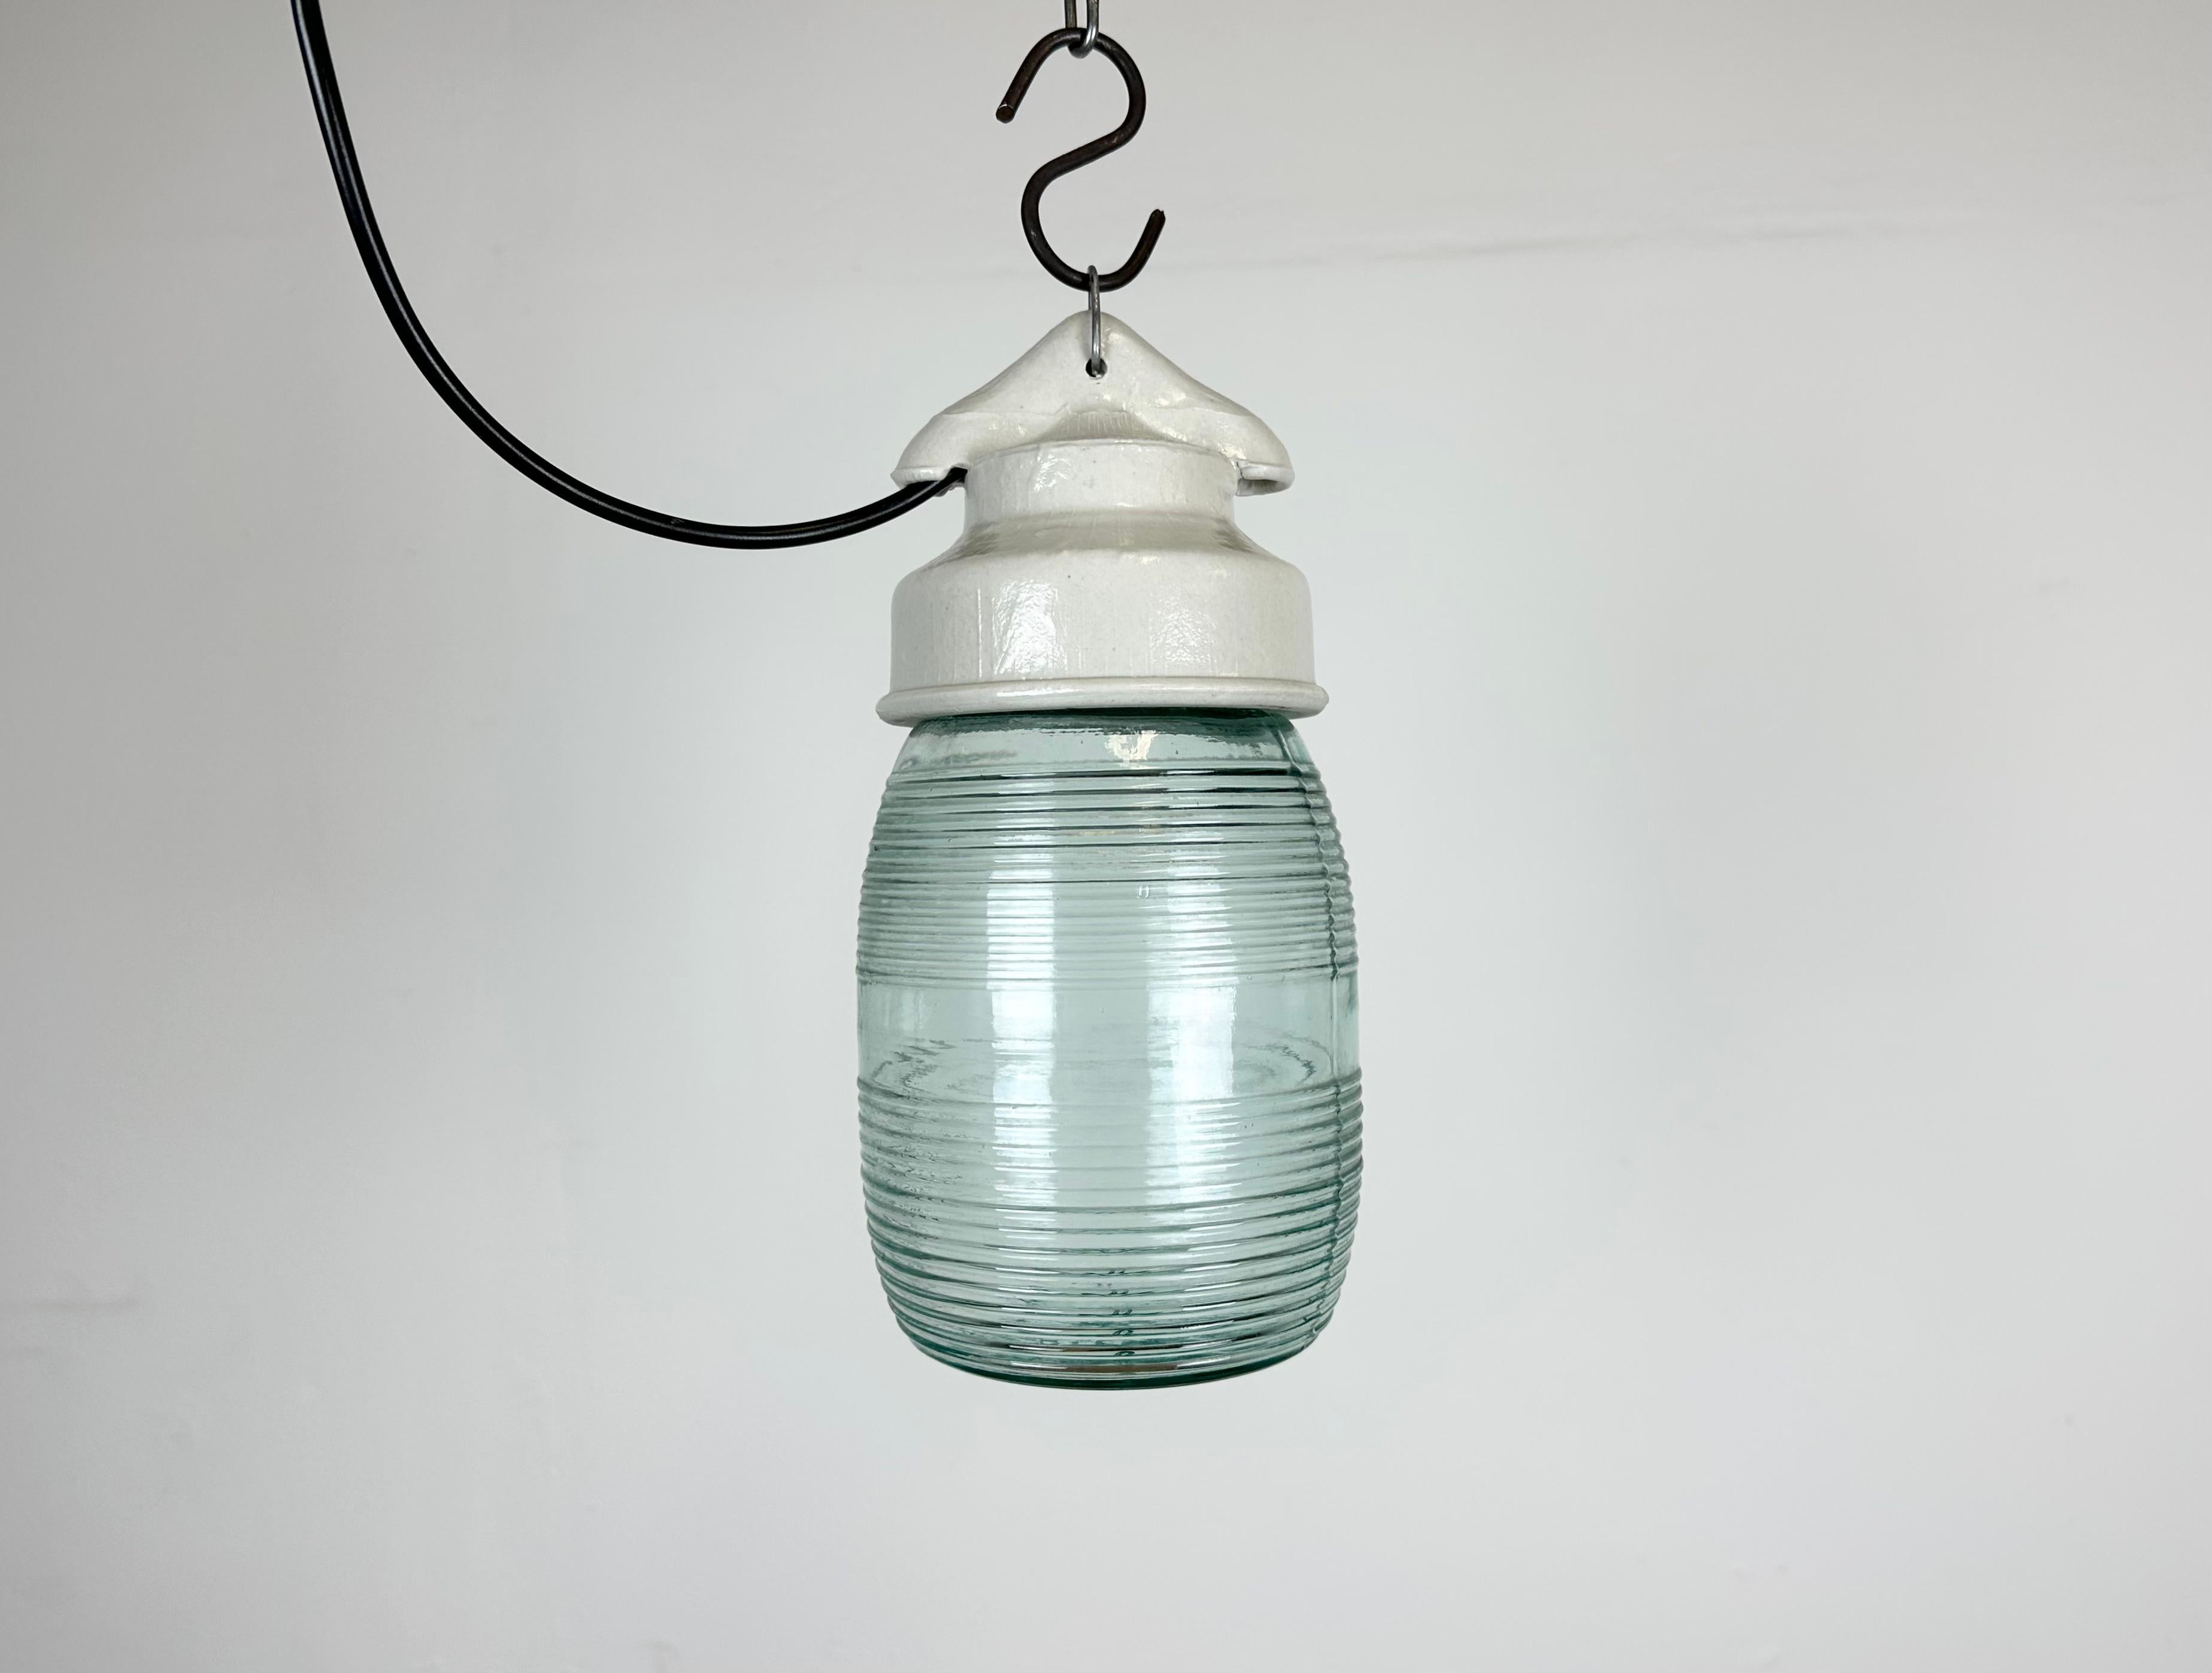 Luminaire industriel vintage fabriqué en ex-Union soviétique dans les années 1970, avec un plateau en porcelaine blanche et un couvercle en verre strié vert clair. La douille nécessite des ampoules E27/ E26. Un nouveau fil. Le poids de la lampe est